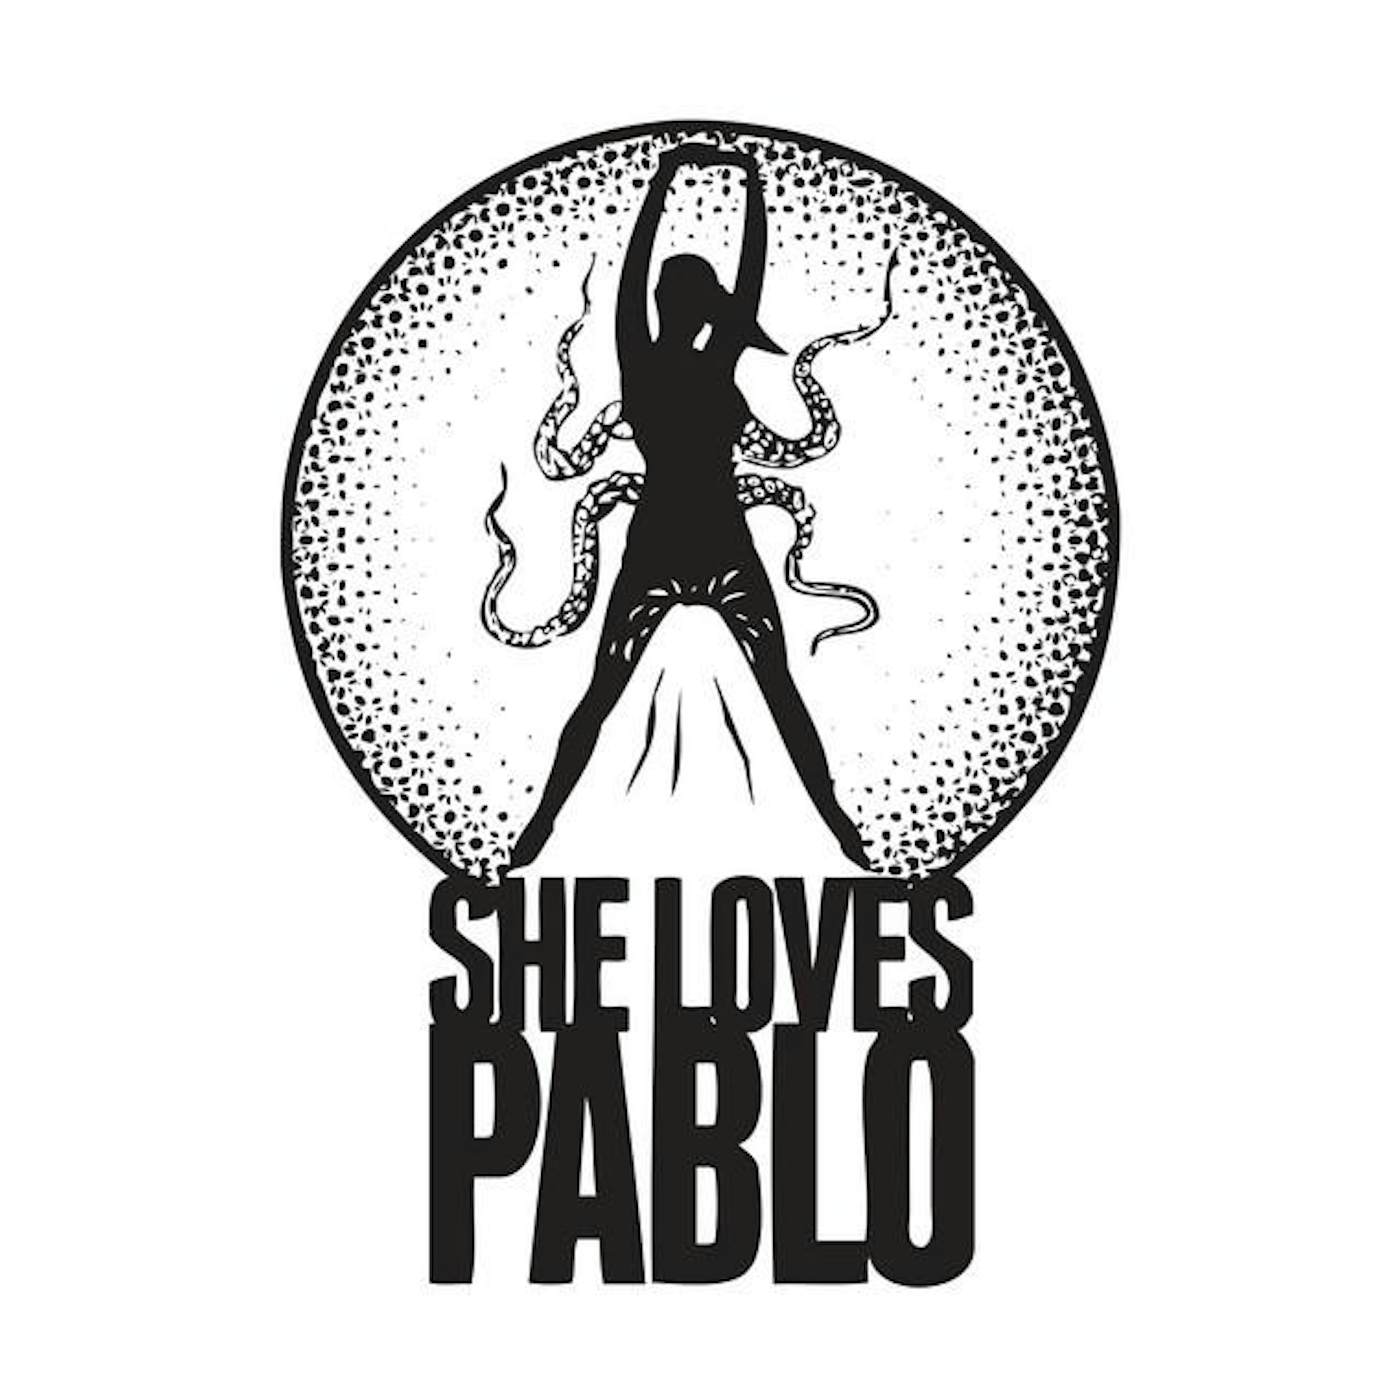 She Loves Pablo